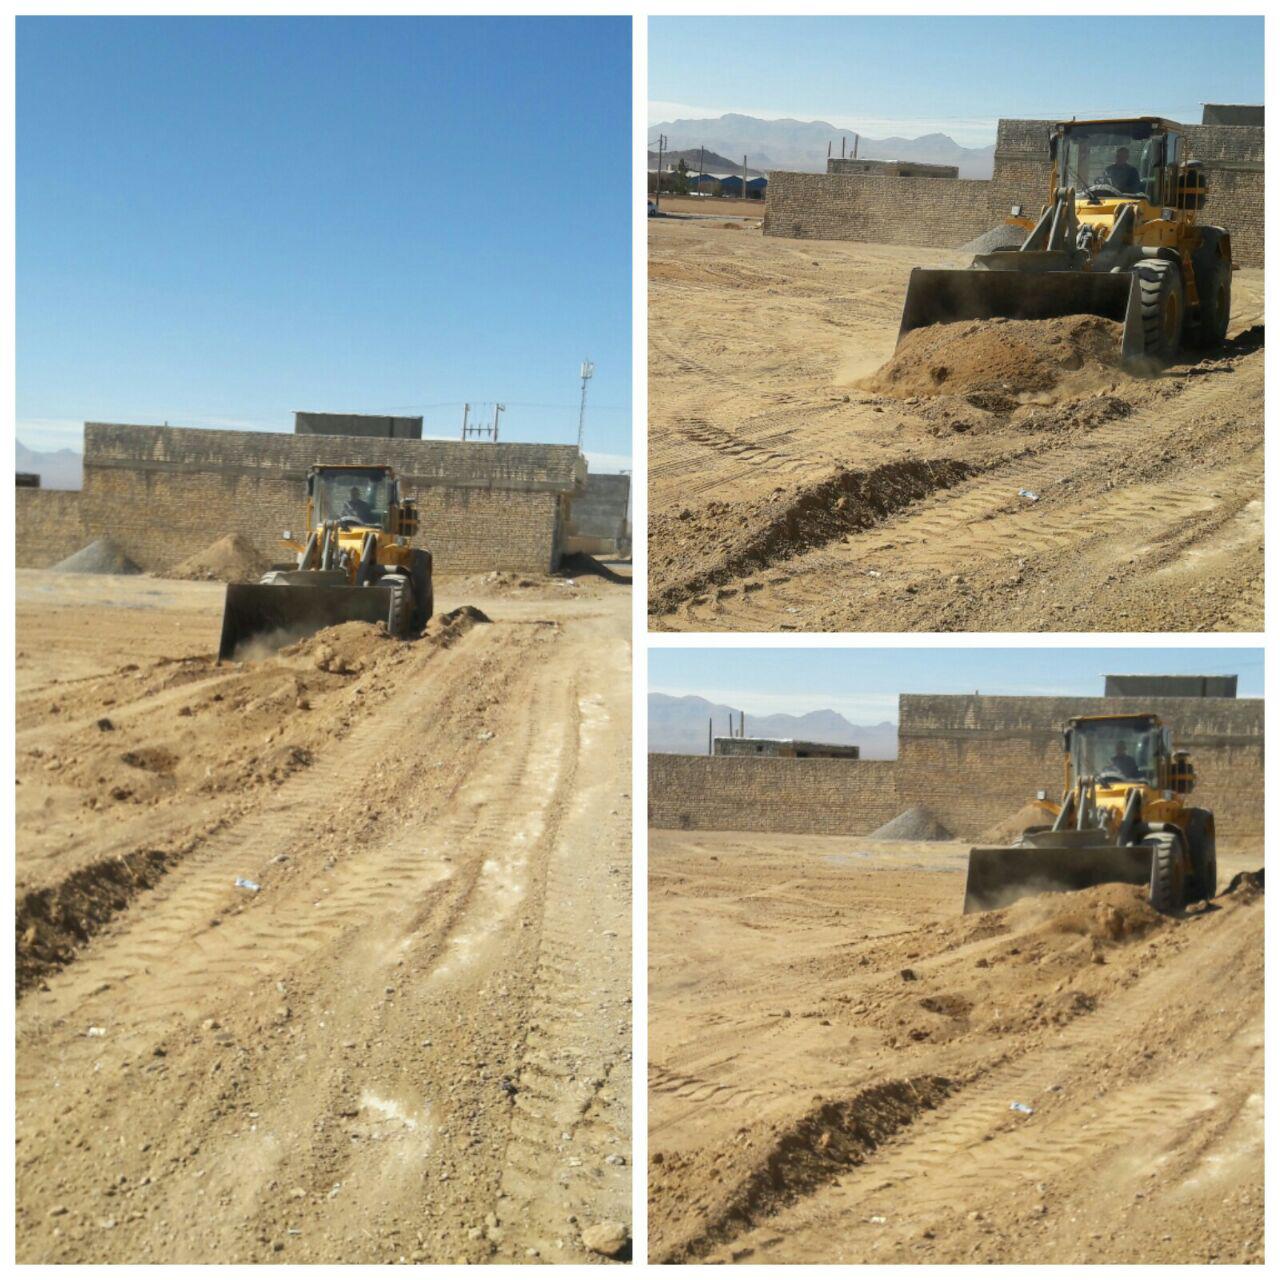 تسطیح و بهسازی سطوح ناهموار زمینهای بایرشهر در منطقه مسکونی شهیدبهشتی توسط واحد خدمات شهرداری علویجه